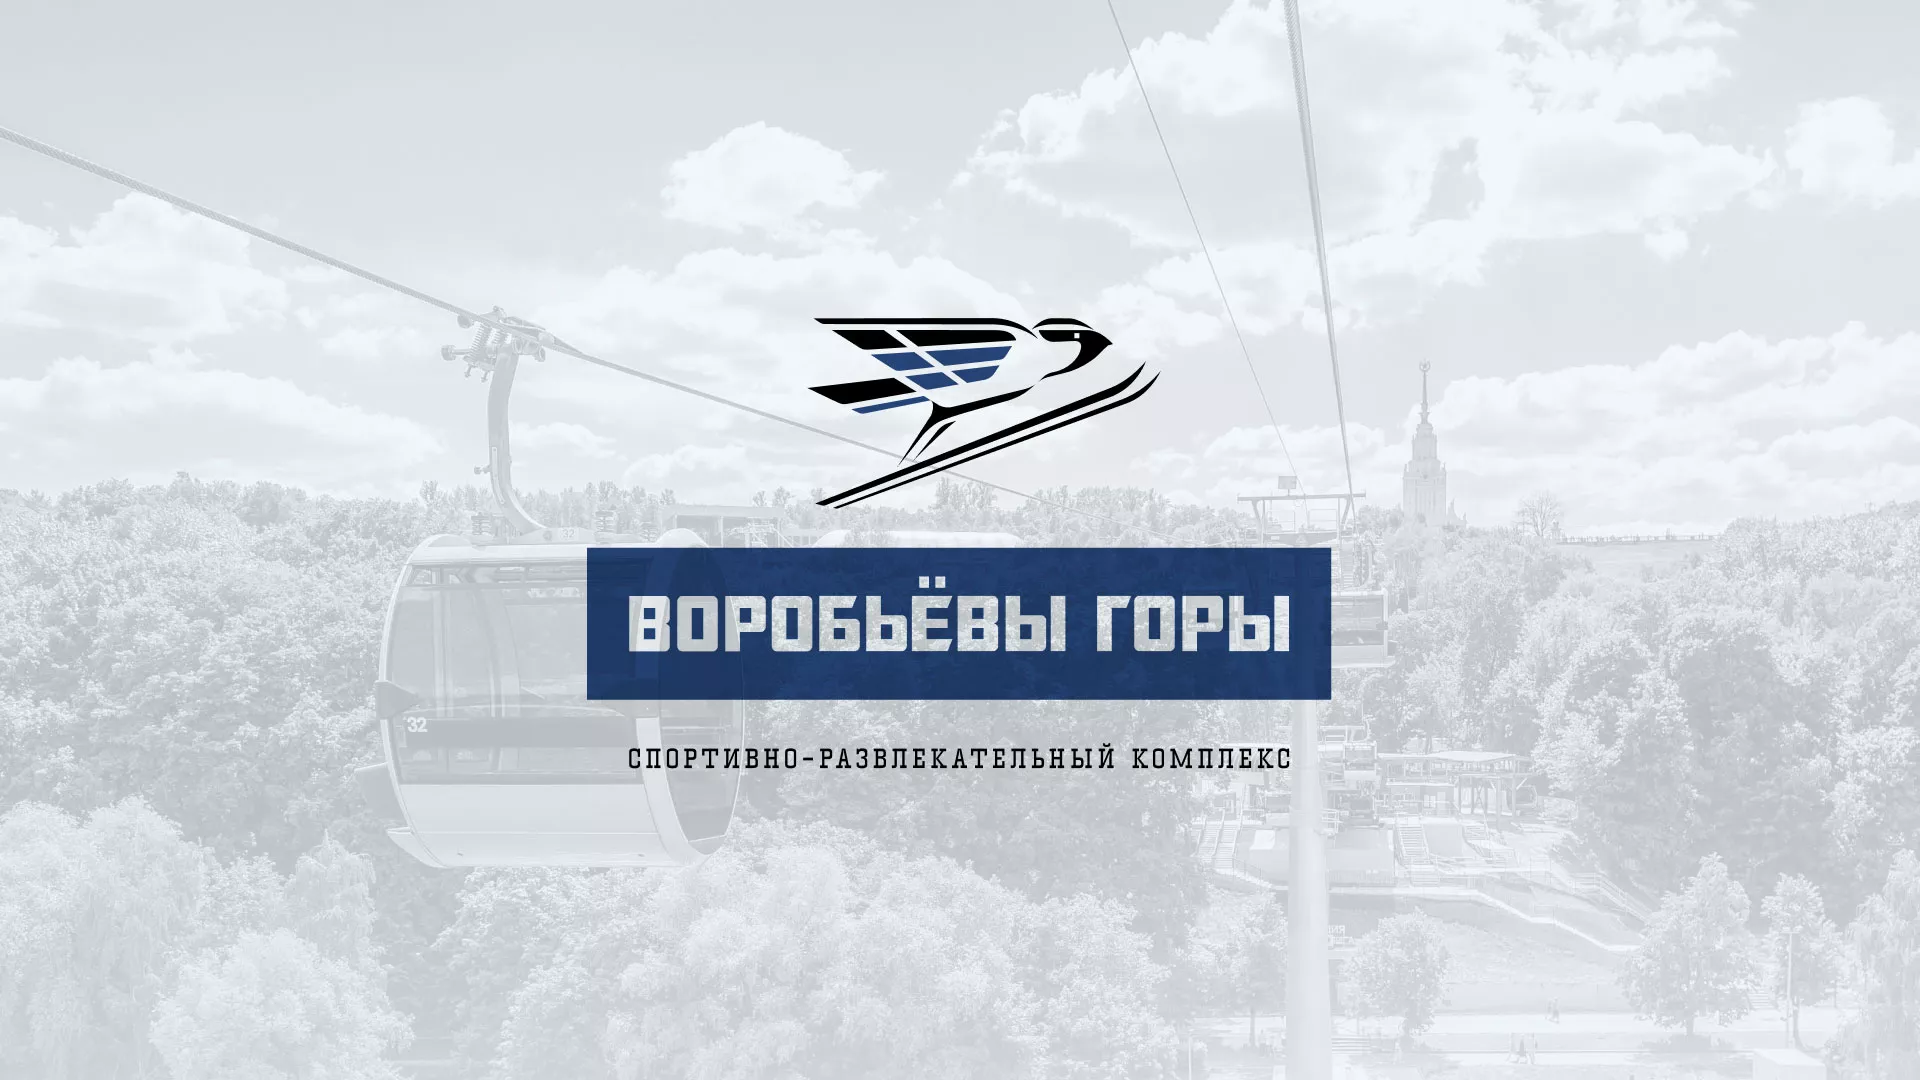 Разработка сайта в Сосногорске для спортивно-развлекательного комплекса «Воробьёвы горы»